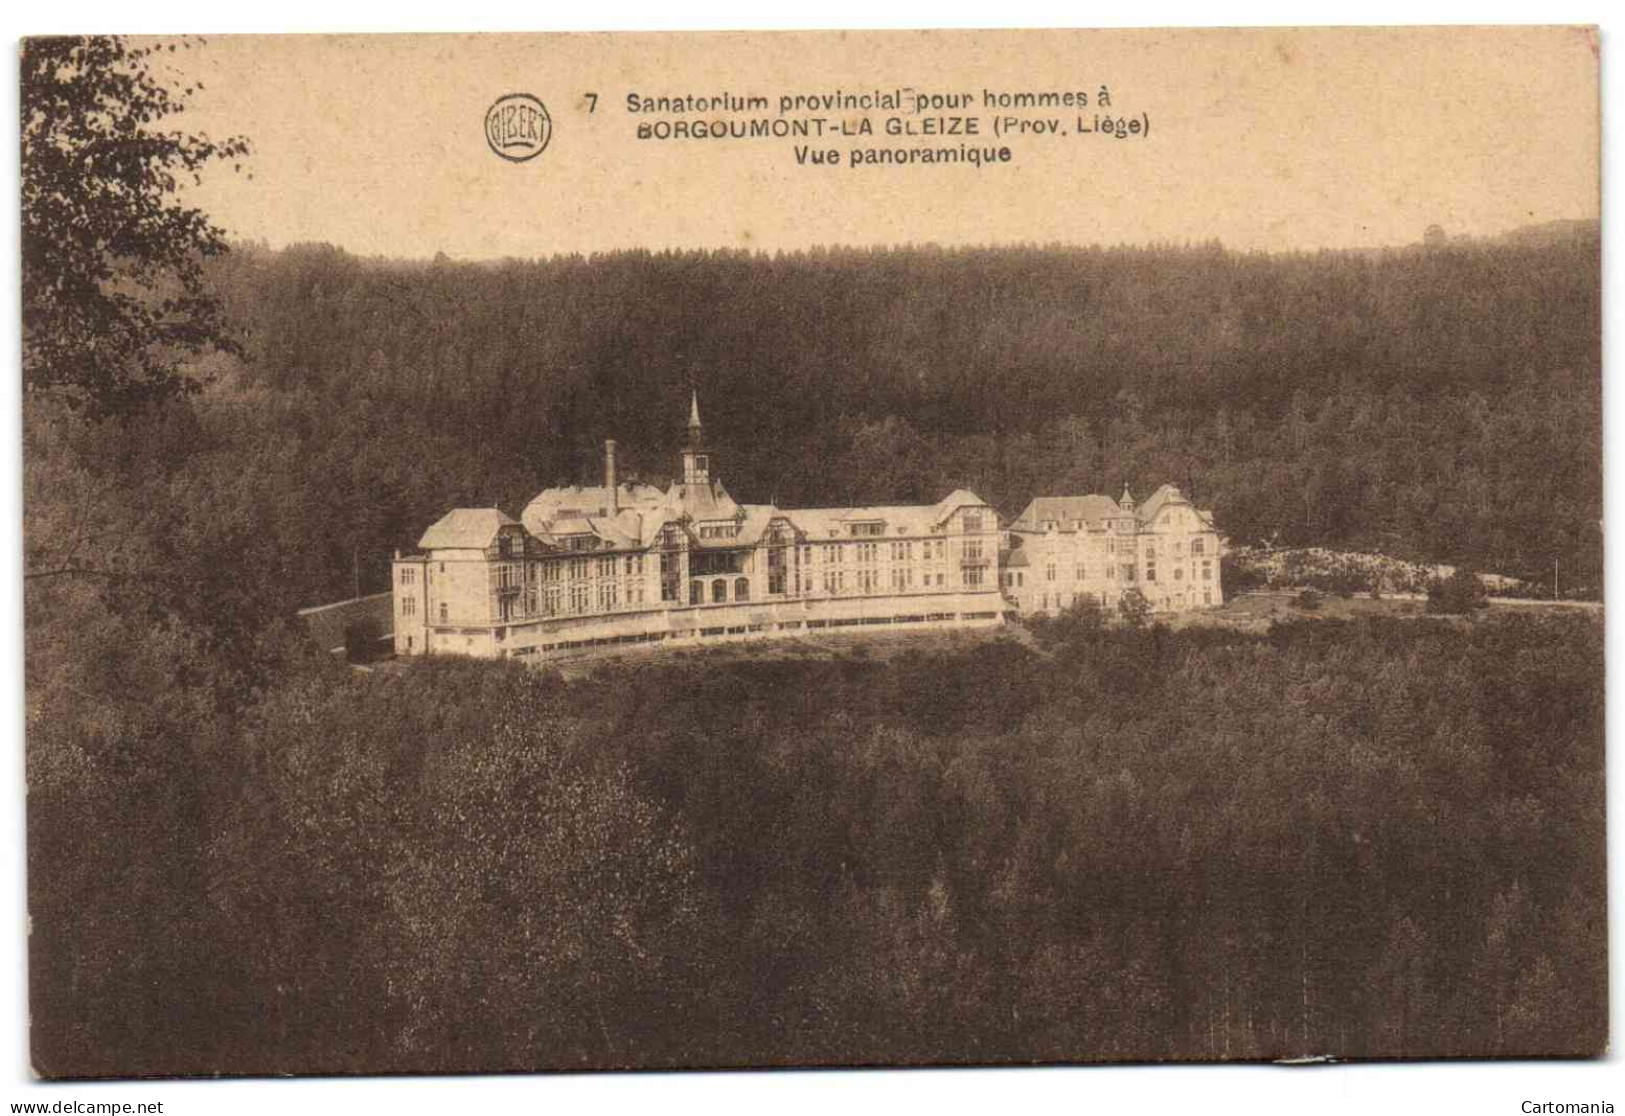 Borgoumont-la-Gleize - Sanatorium Provincial Pour Hommes - Stoumont